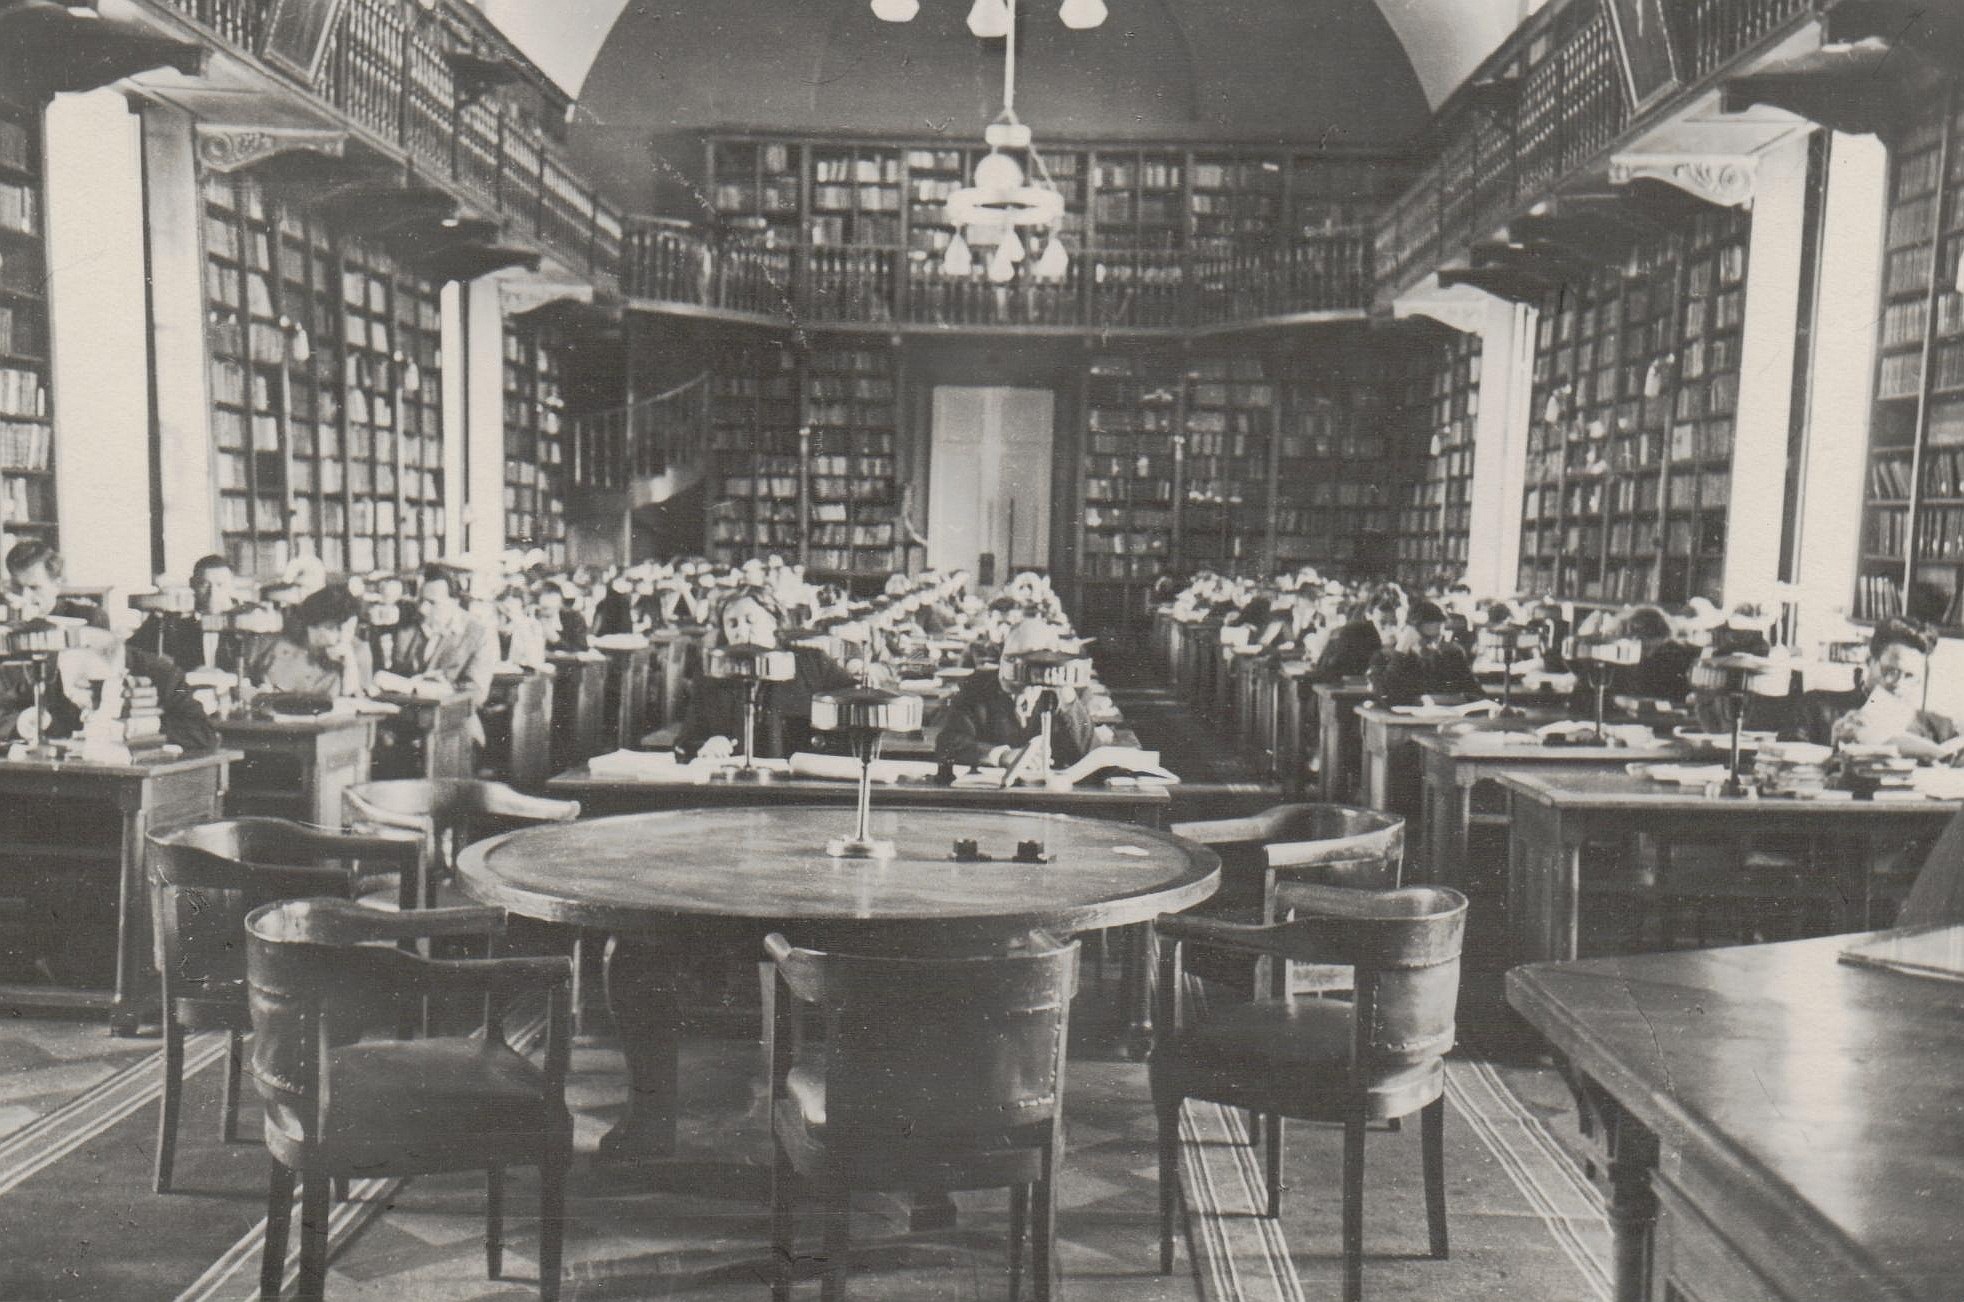 Social Sciences & Economics Room. 1950s